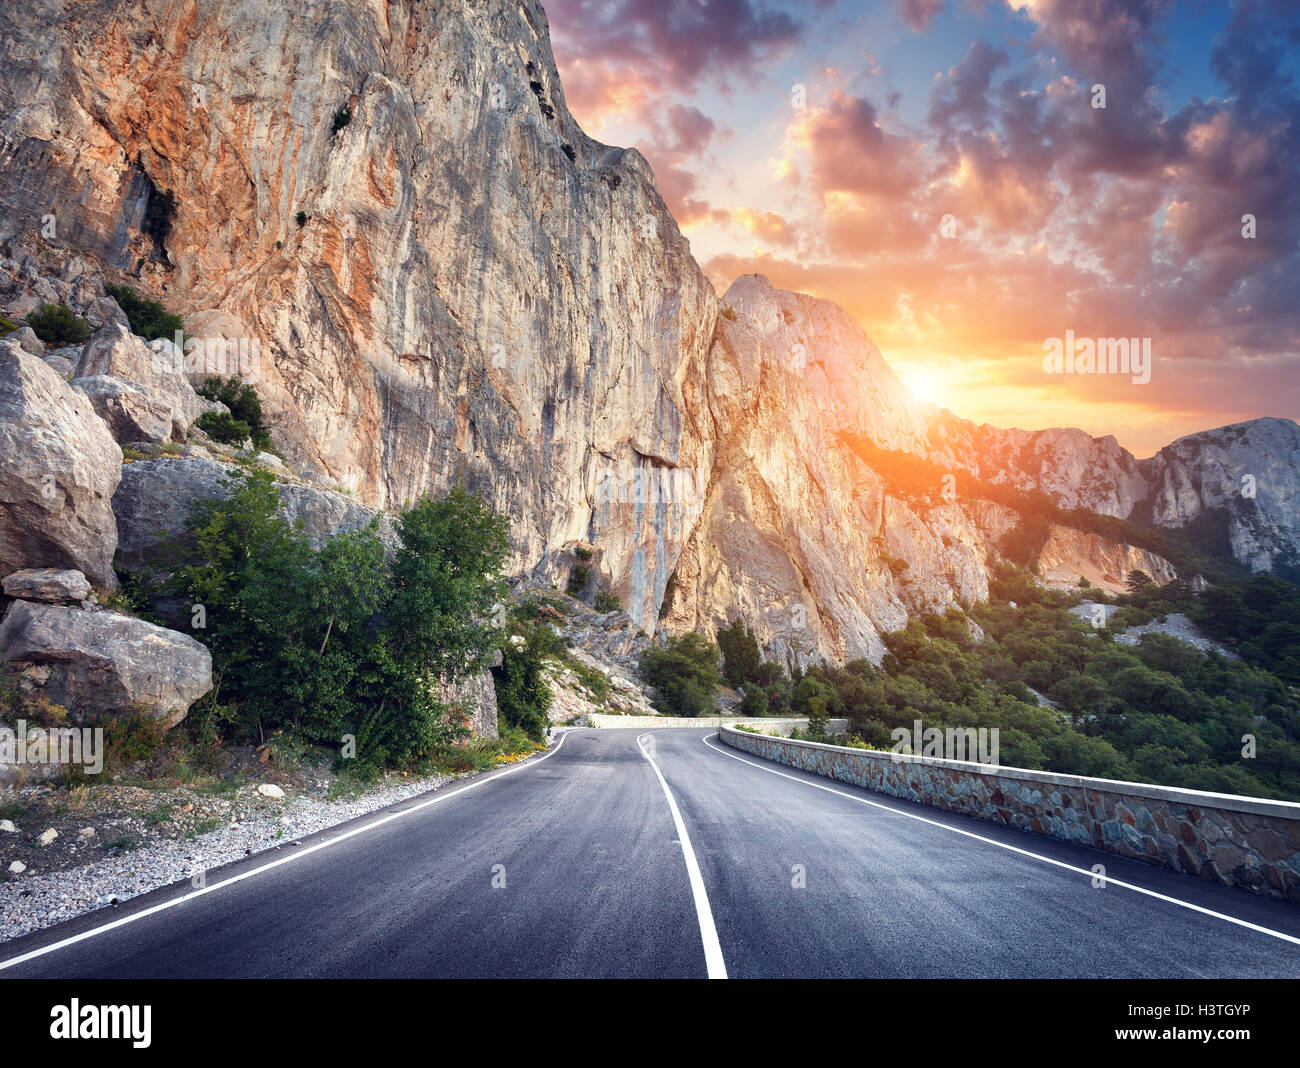 Schöne asphaltierte Straße. Bunte Landschaft mit hohen Felsen, Bergstraße mit perfekter Asphalt, Bäume, Sonne und erstaunliche bewölkt Stockfoto